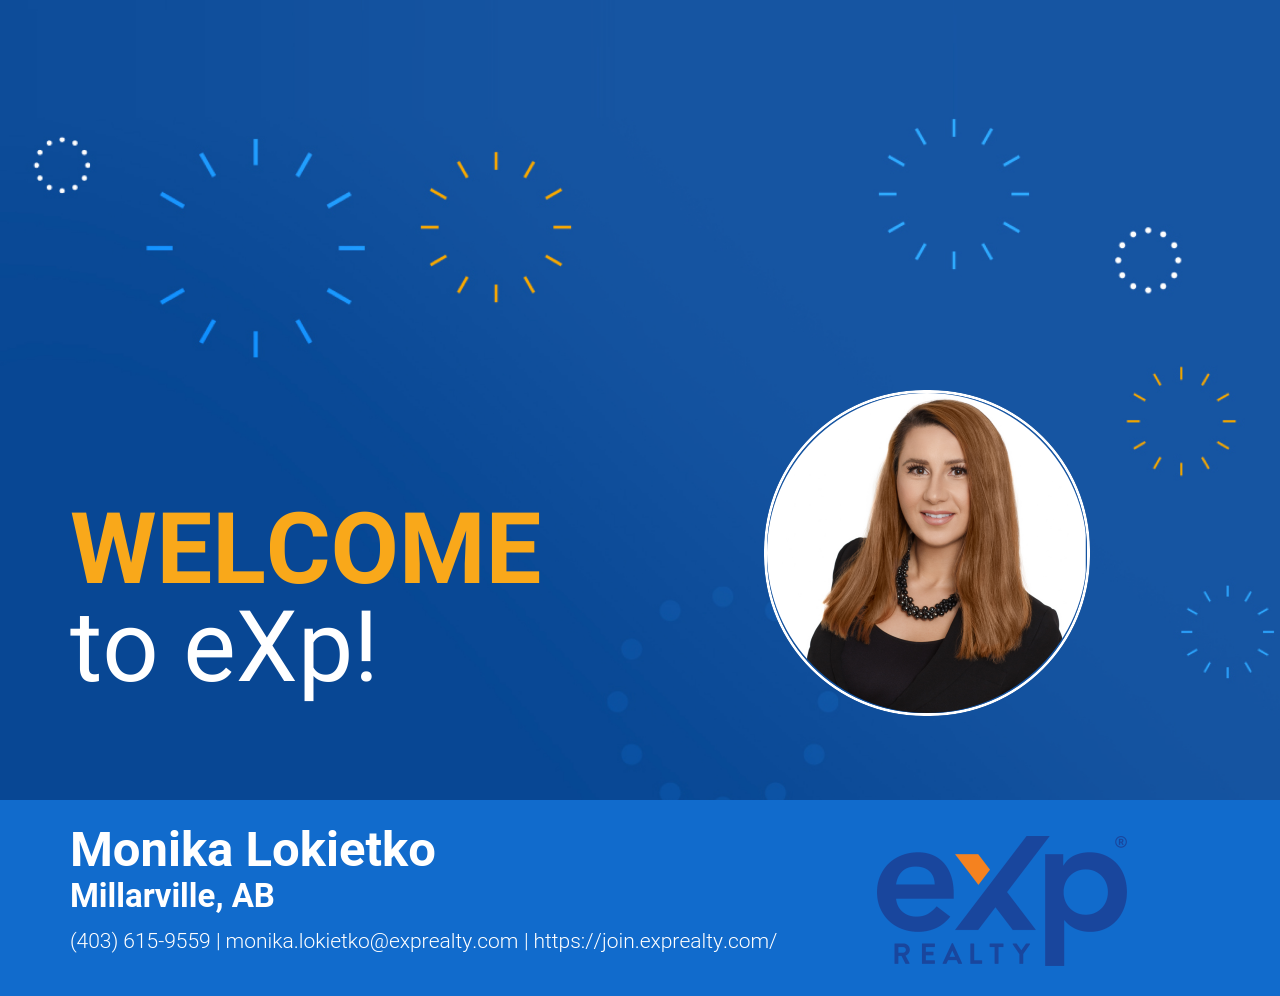 Monika Lokietko Joined eXp Realty!